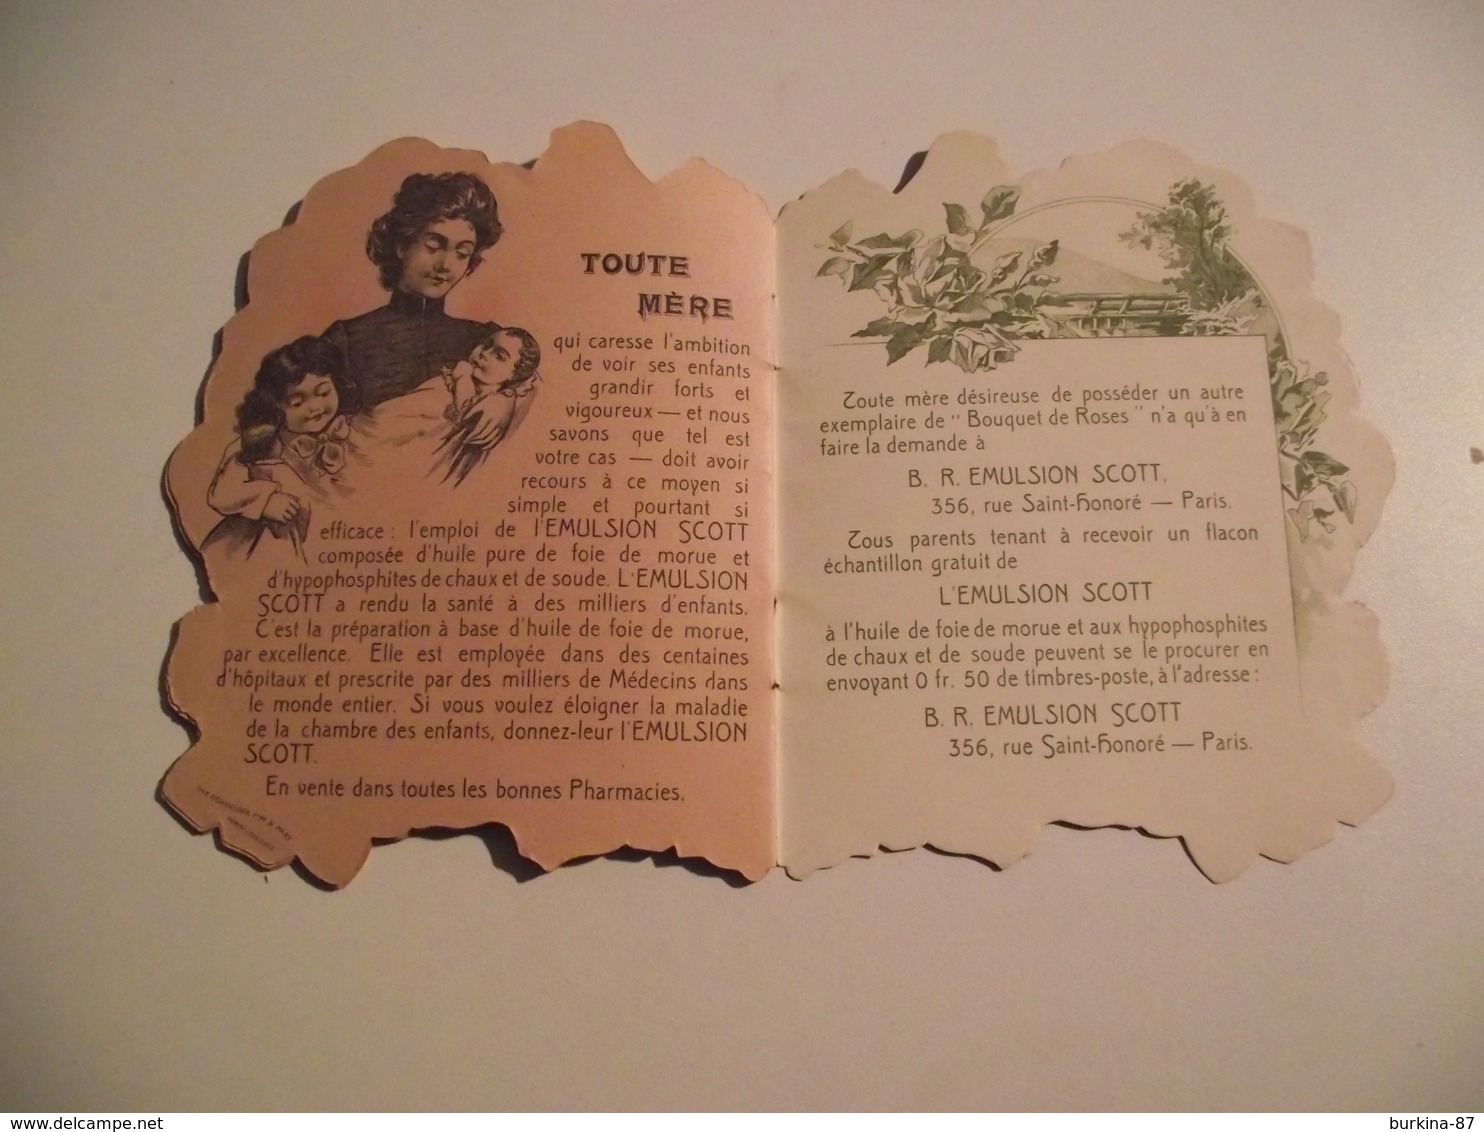 Bouquet de Roses, le journal de BB, vers 1910, publicité, Emulsion SCOTT